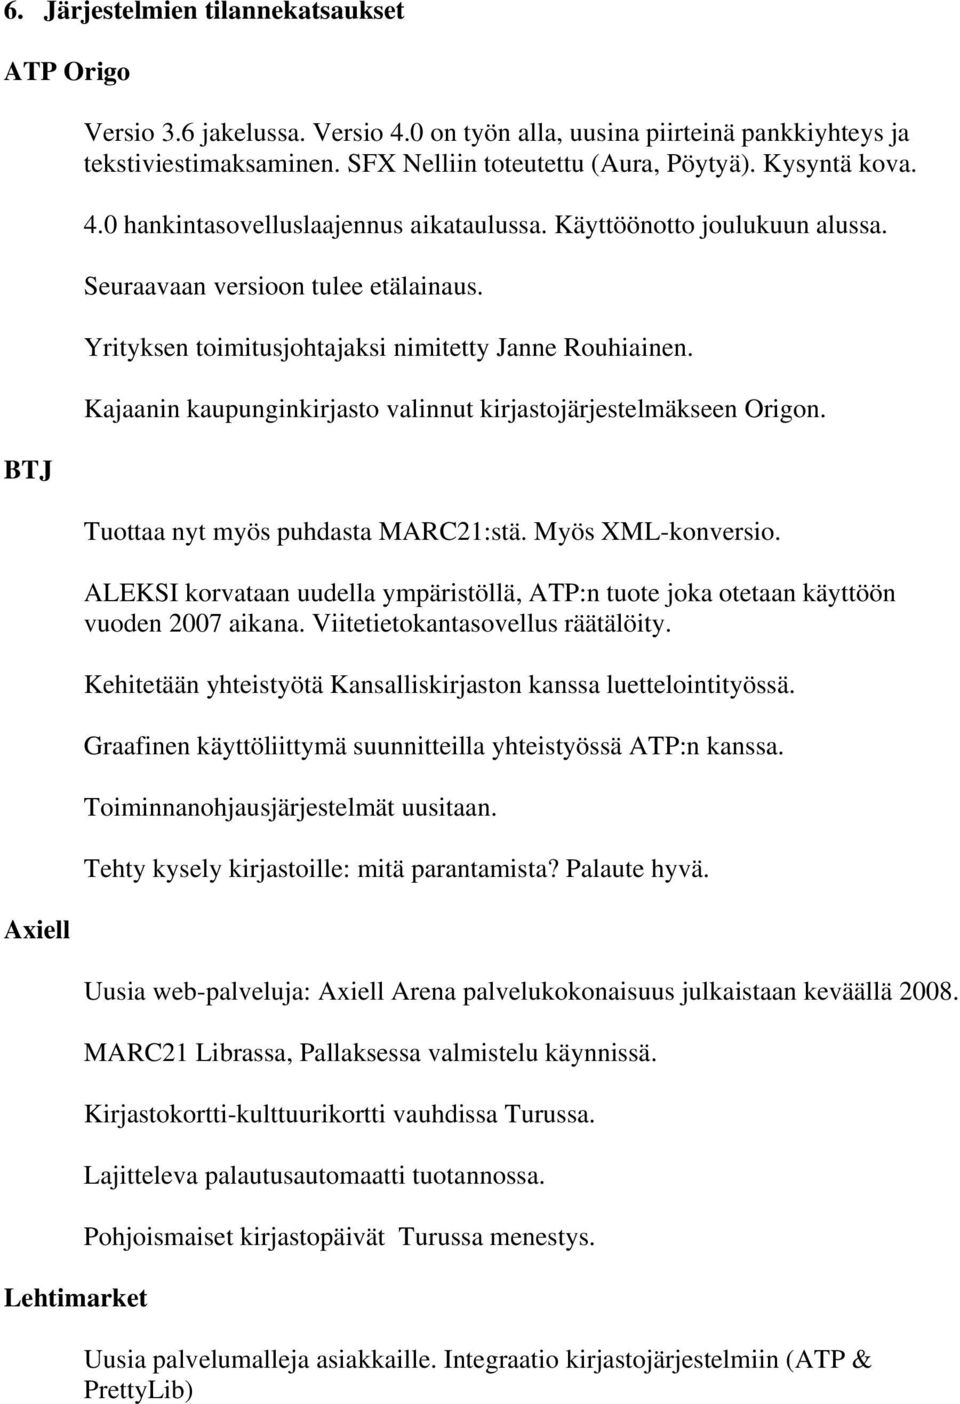 Yrityksen toimitusjohtajaksi nimitetty Janne Rouhiainen. Kajaanin kaupunginkirjasto valinnut kirjastojärjestelmäkseen Origon. Tuottaa nyt myös puhdasta MARC21:stä. Myös XML-konversio.